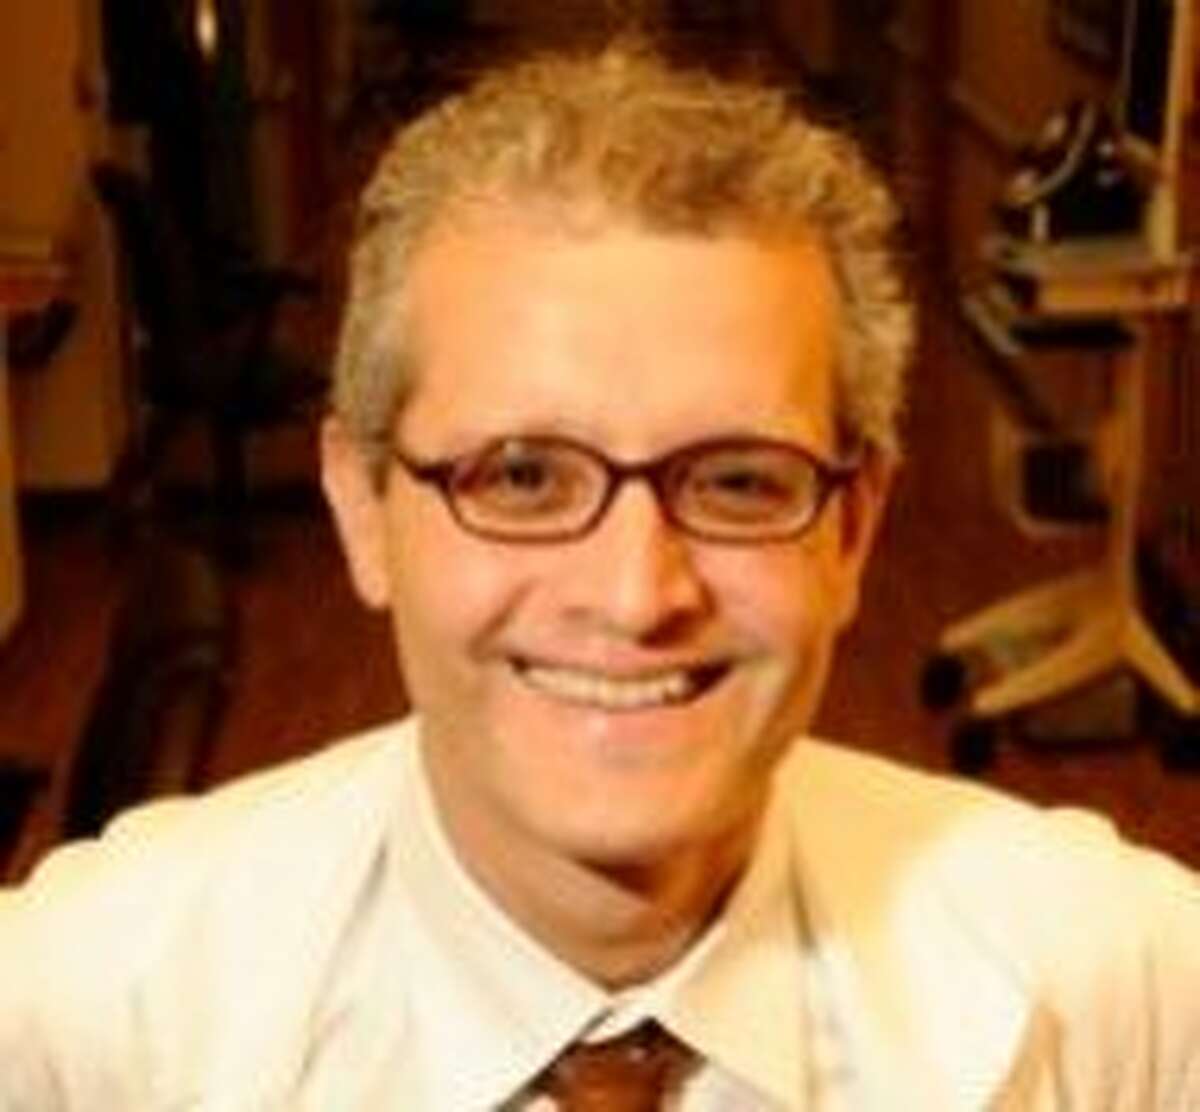 Dr. Edgar Pierluissi